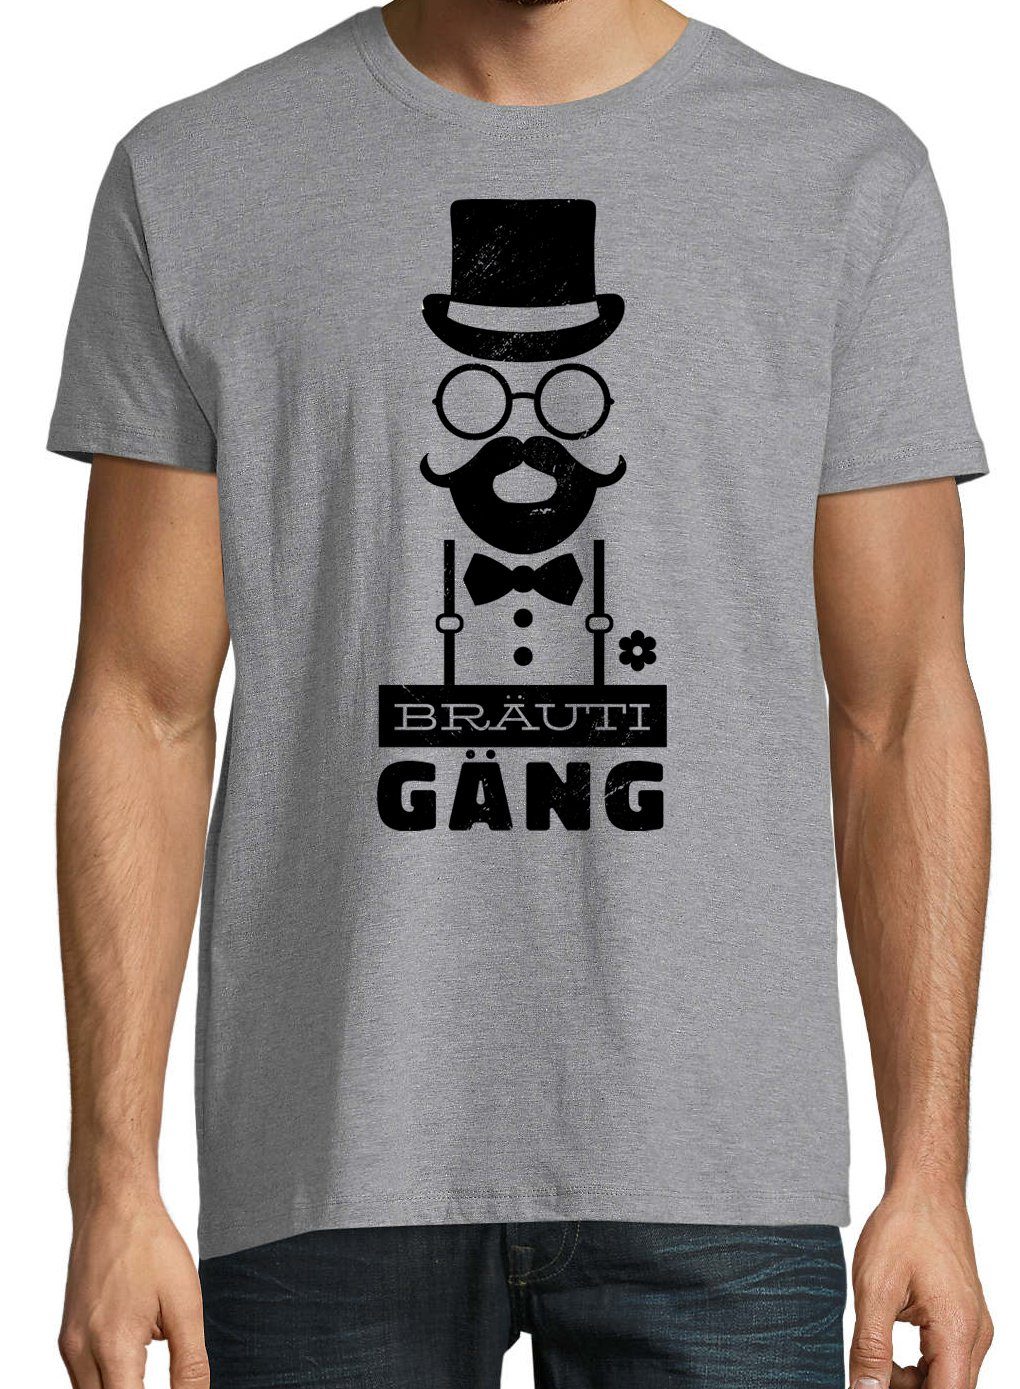 T-Shirt Herren Designz Grau lustigem Youth T-Shirt Spruch BrautiGang mit